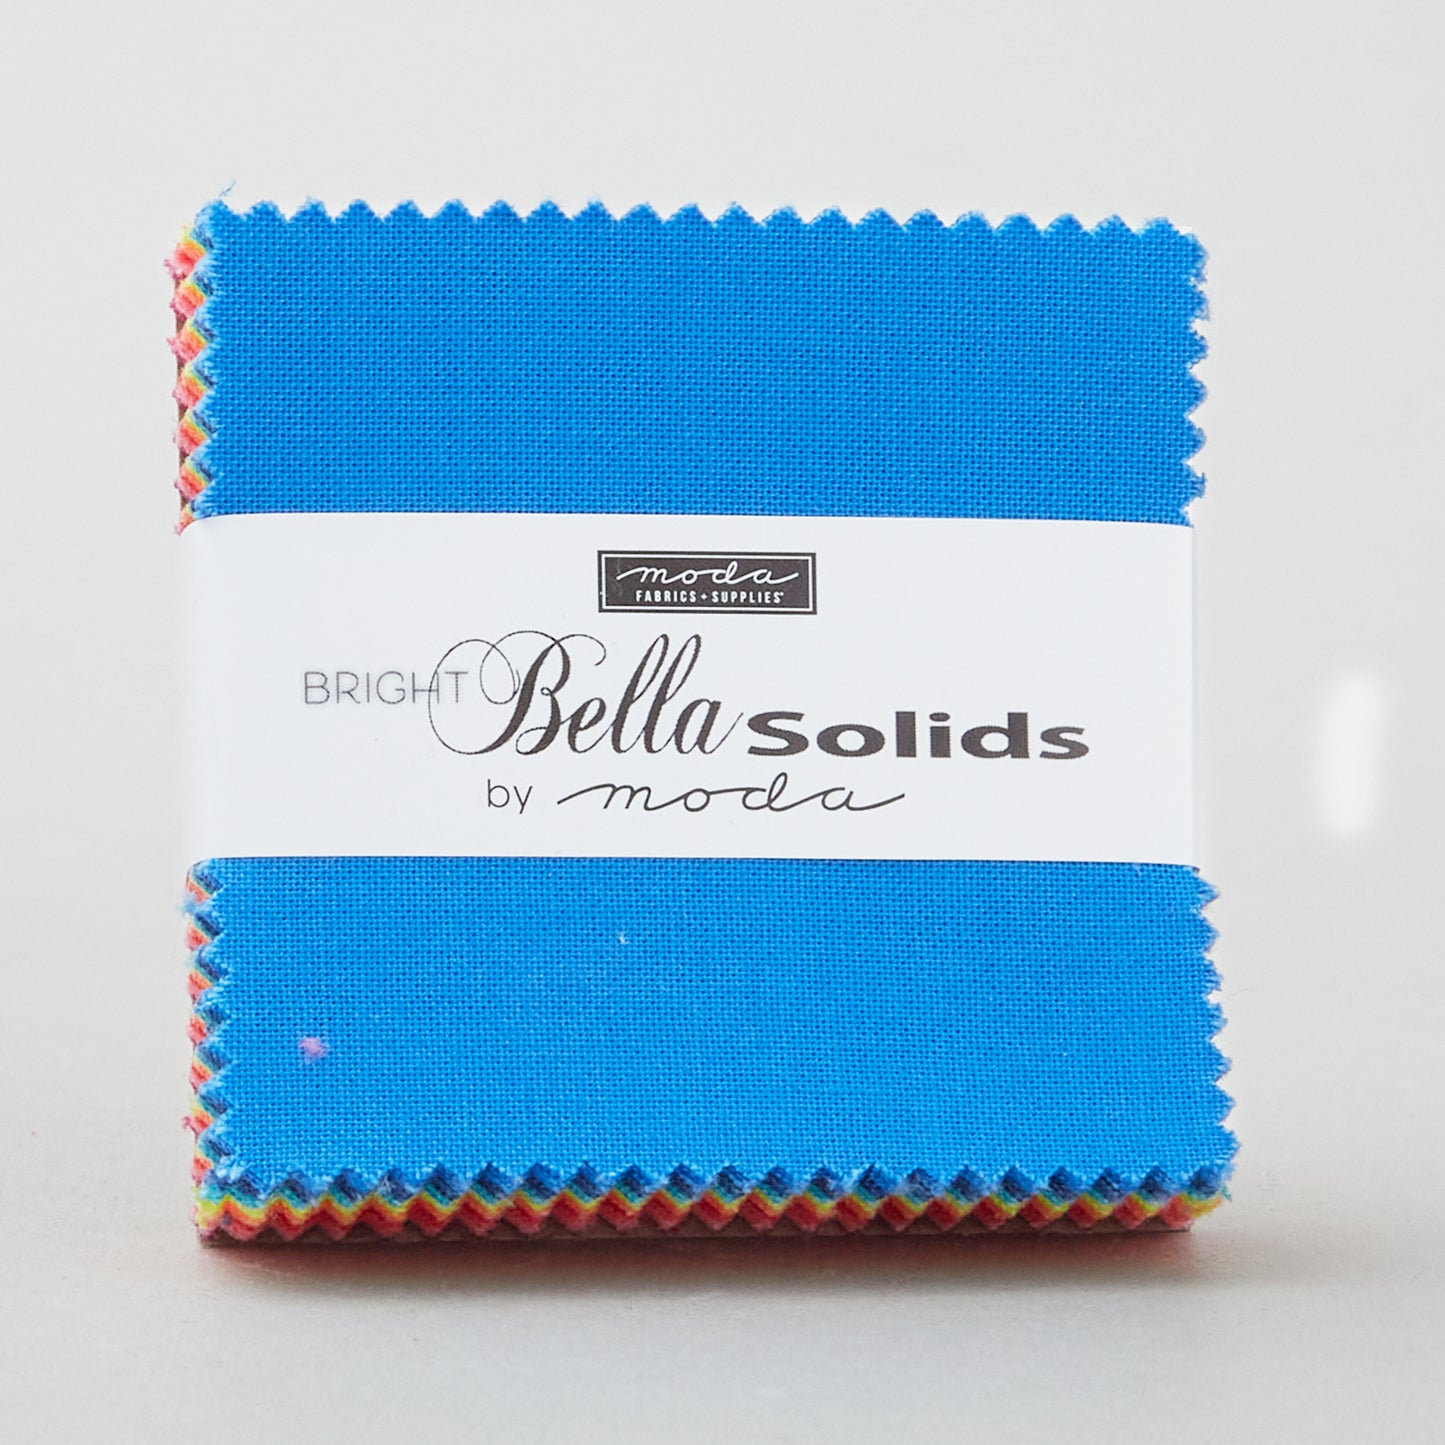 Bella Solids - BrightMini Charm Pack Alternative View #1